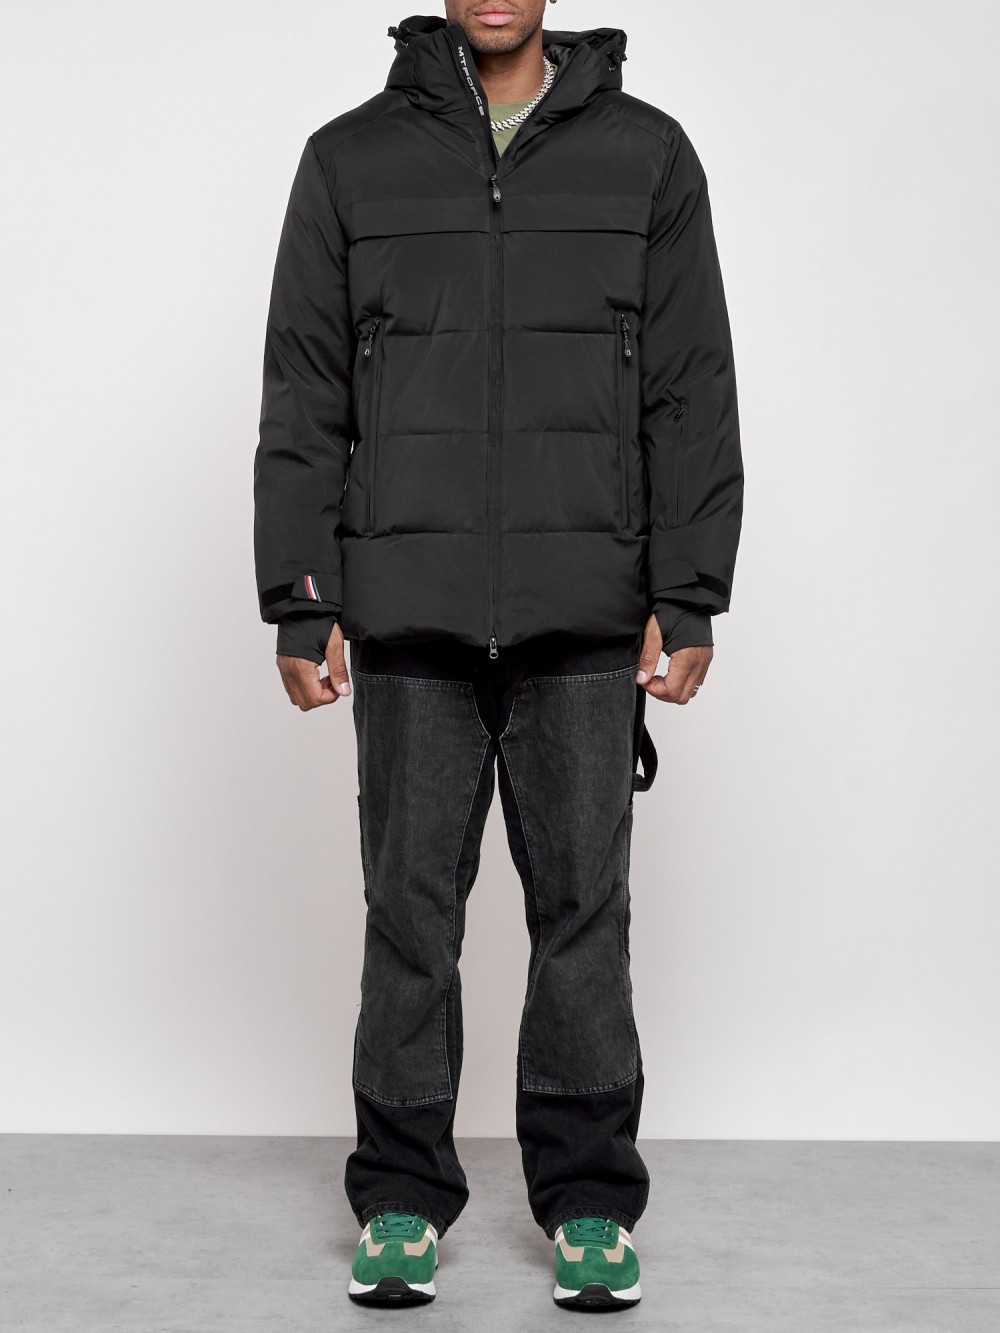 Куртка мужская зимняя горнолыжная Chunmai AD2356Ch, 52